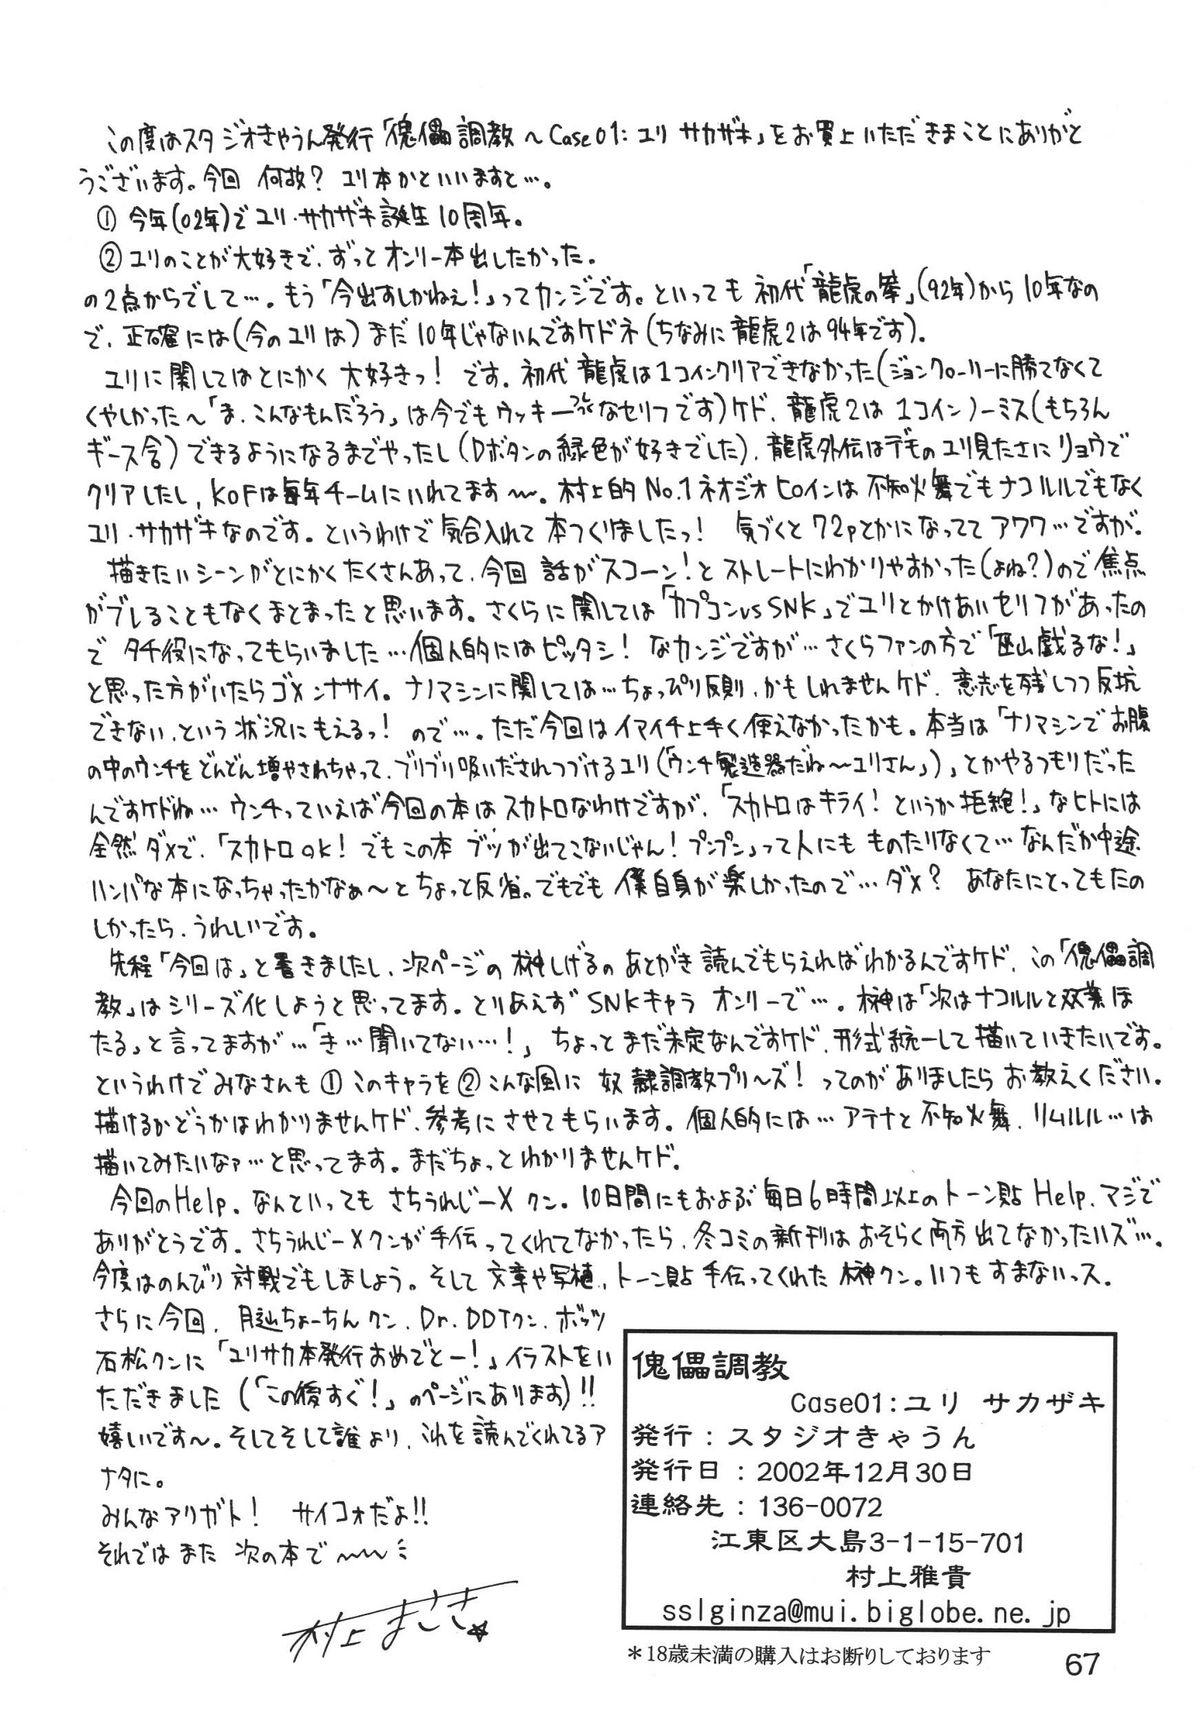 Kairai Choukyou Case 01: Yuri Sakazaki 67